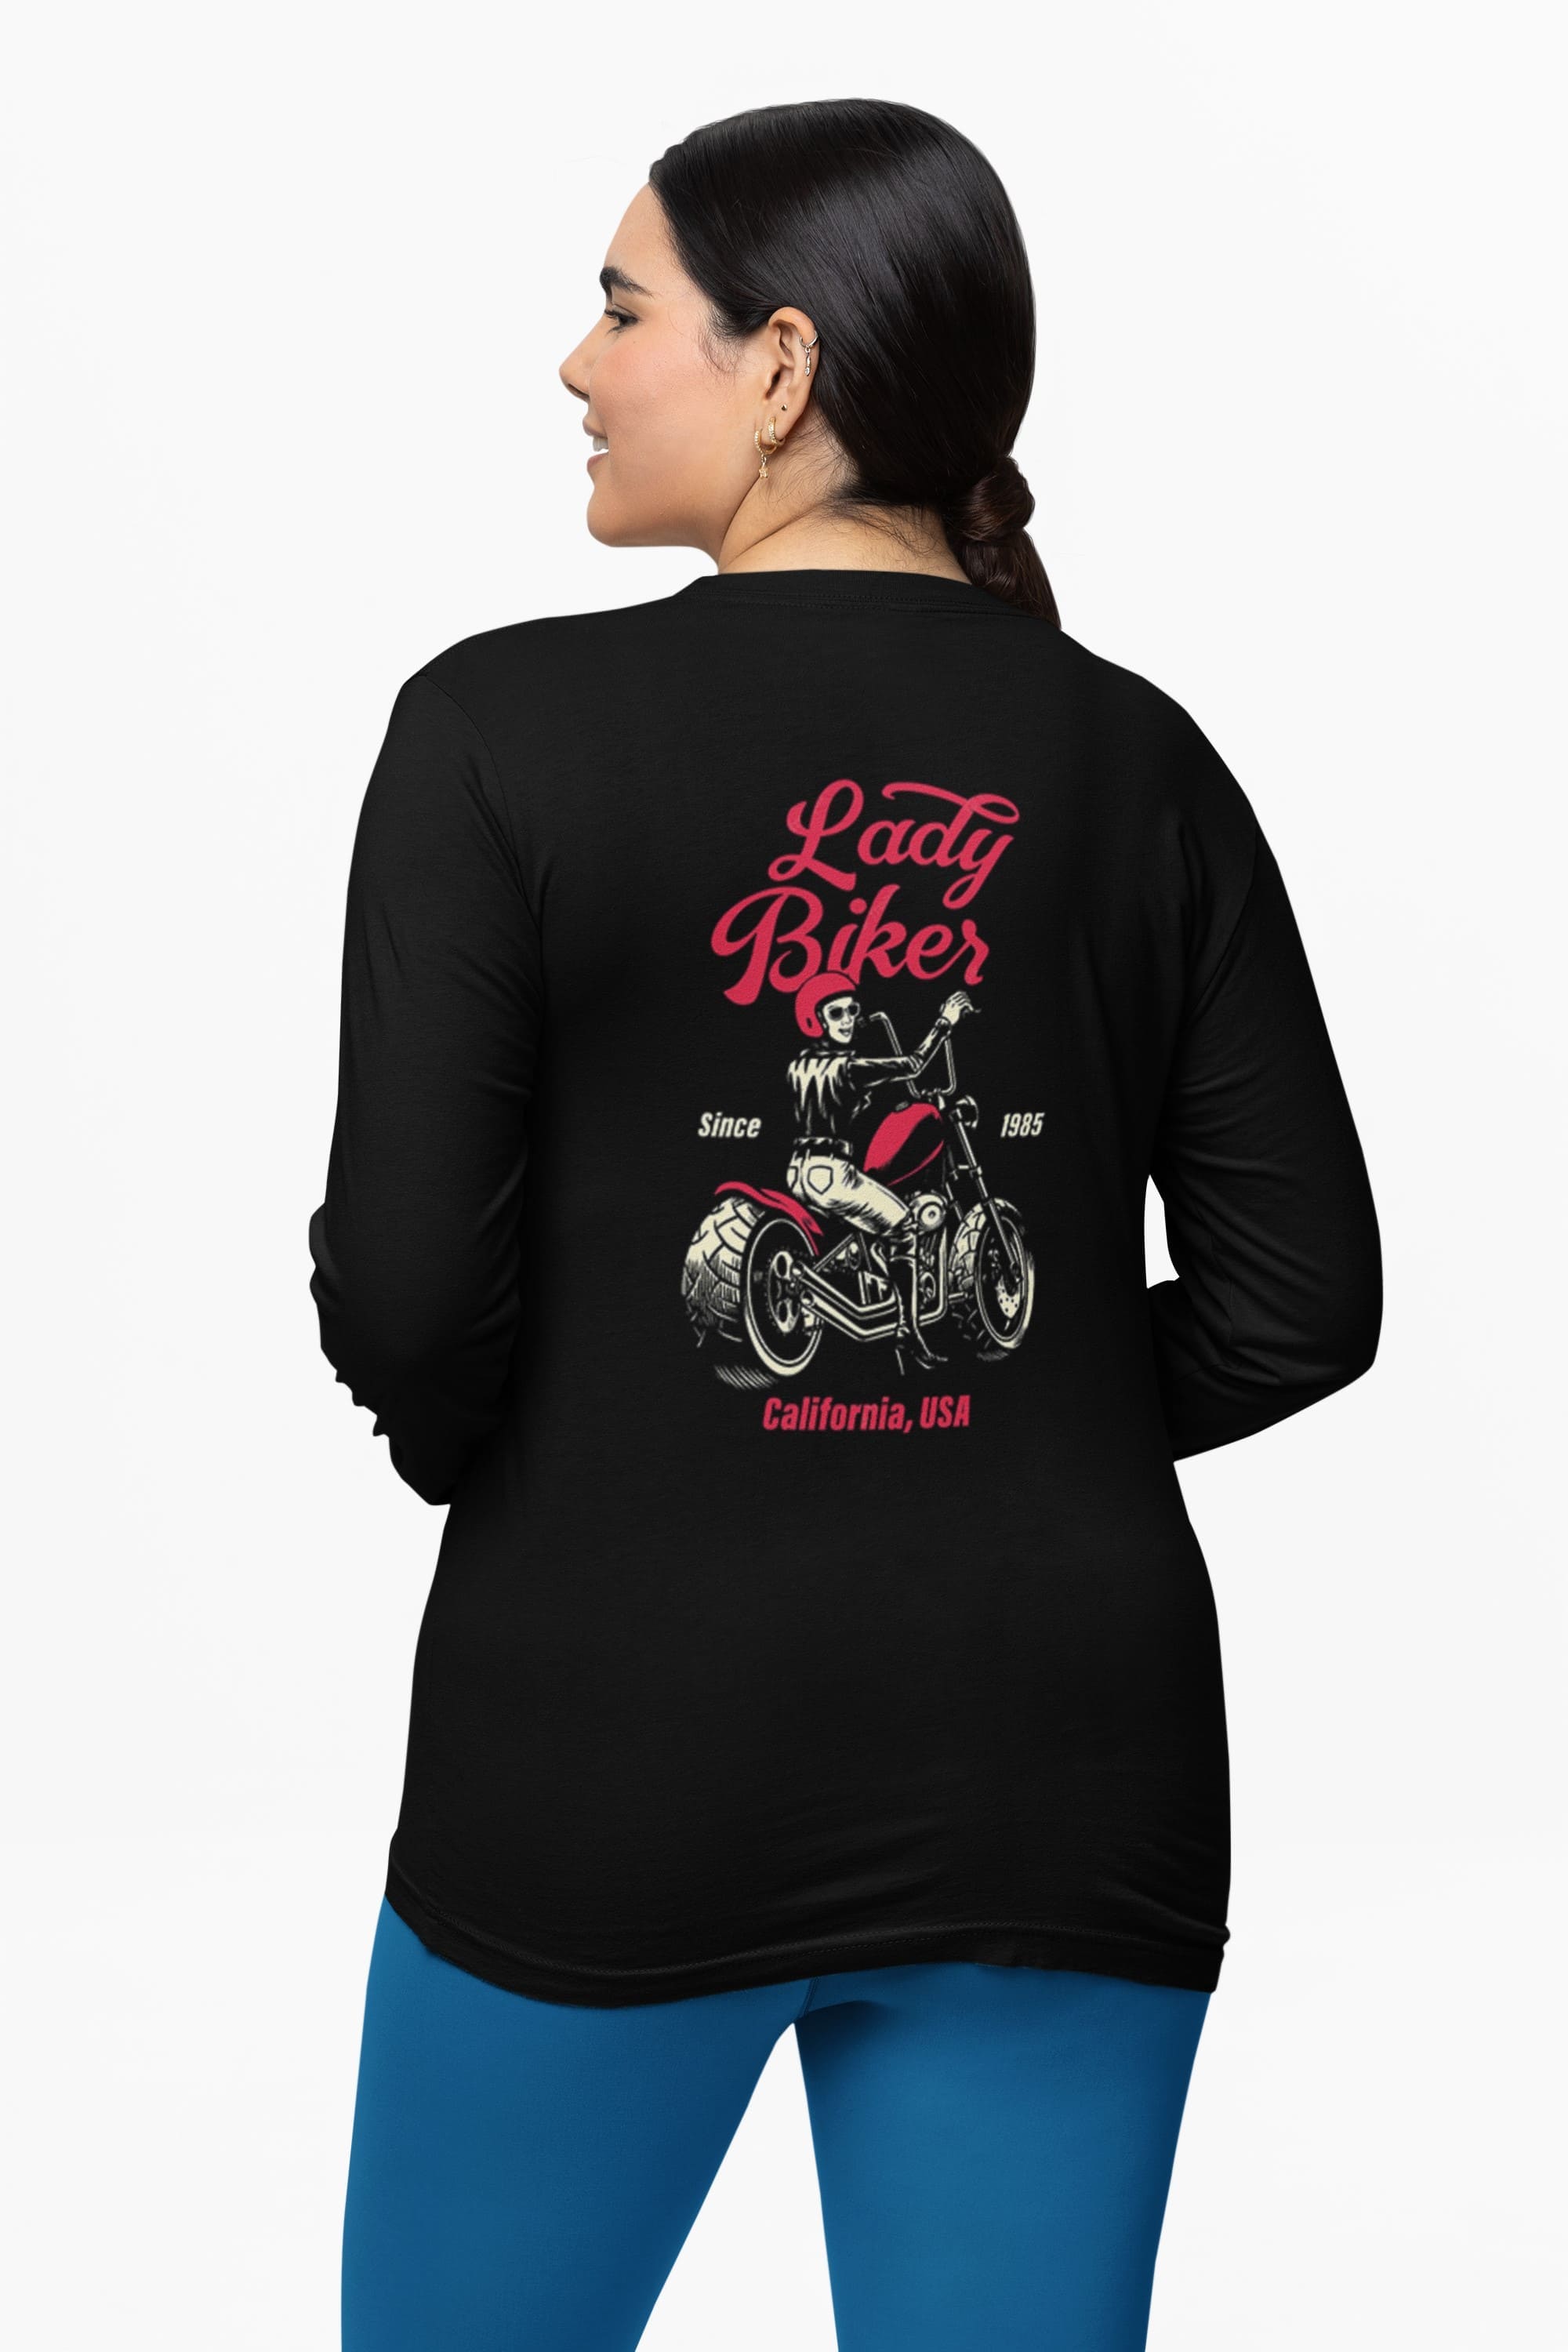 Long Sleeve Motorcycle Tee - 'Lady Biker' Back Design